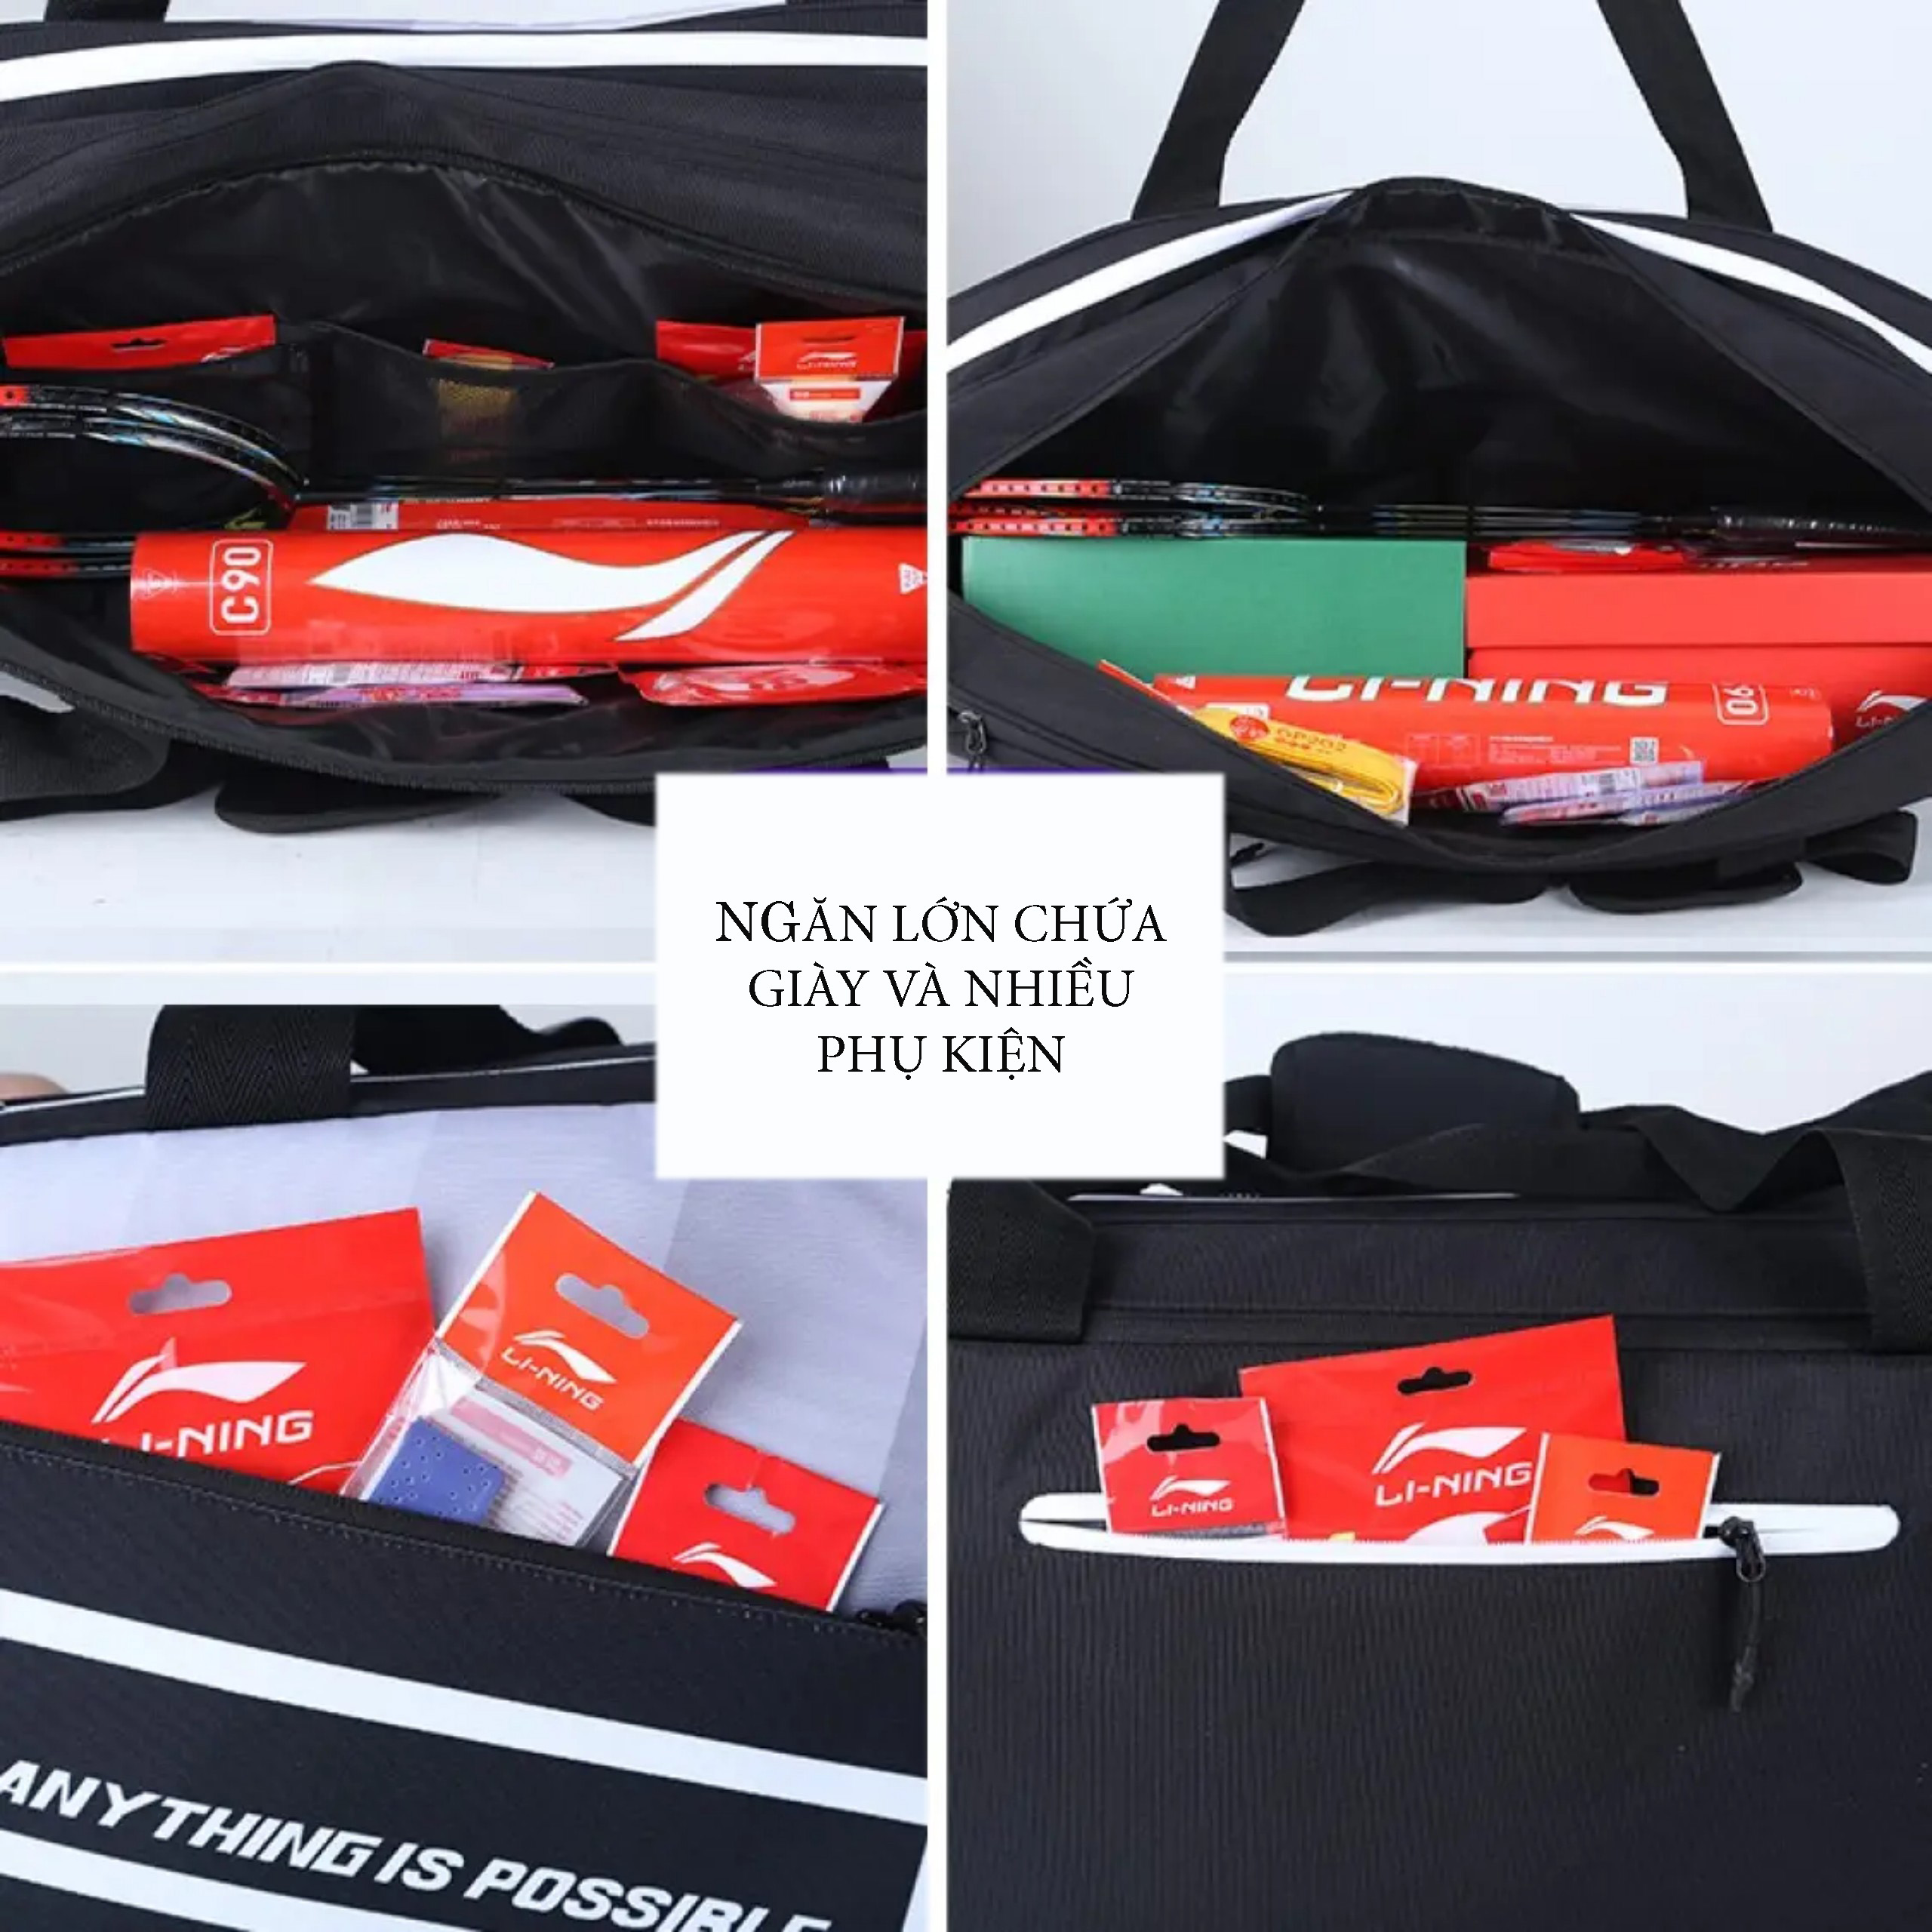 Túi vợt cầu lông Lining chính hãng ABJS019 có 3 màu lựa chọn